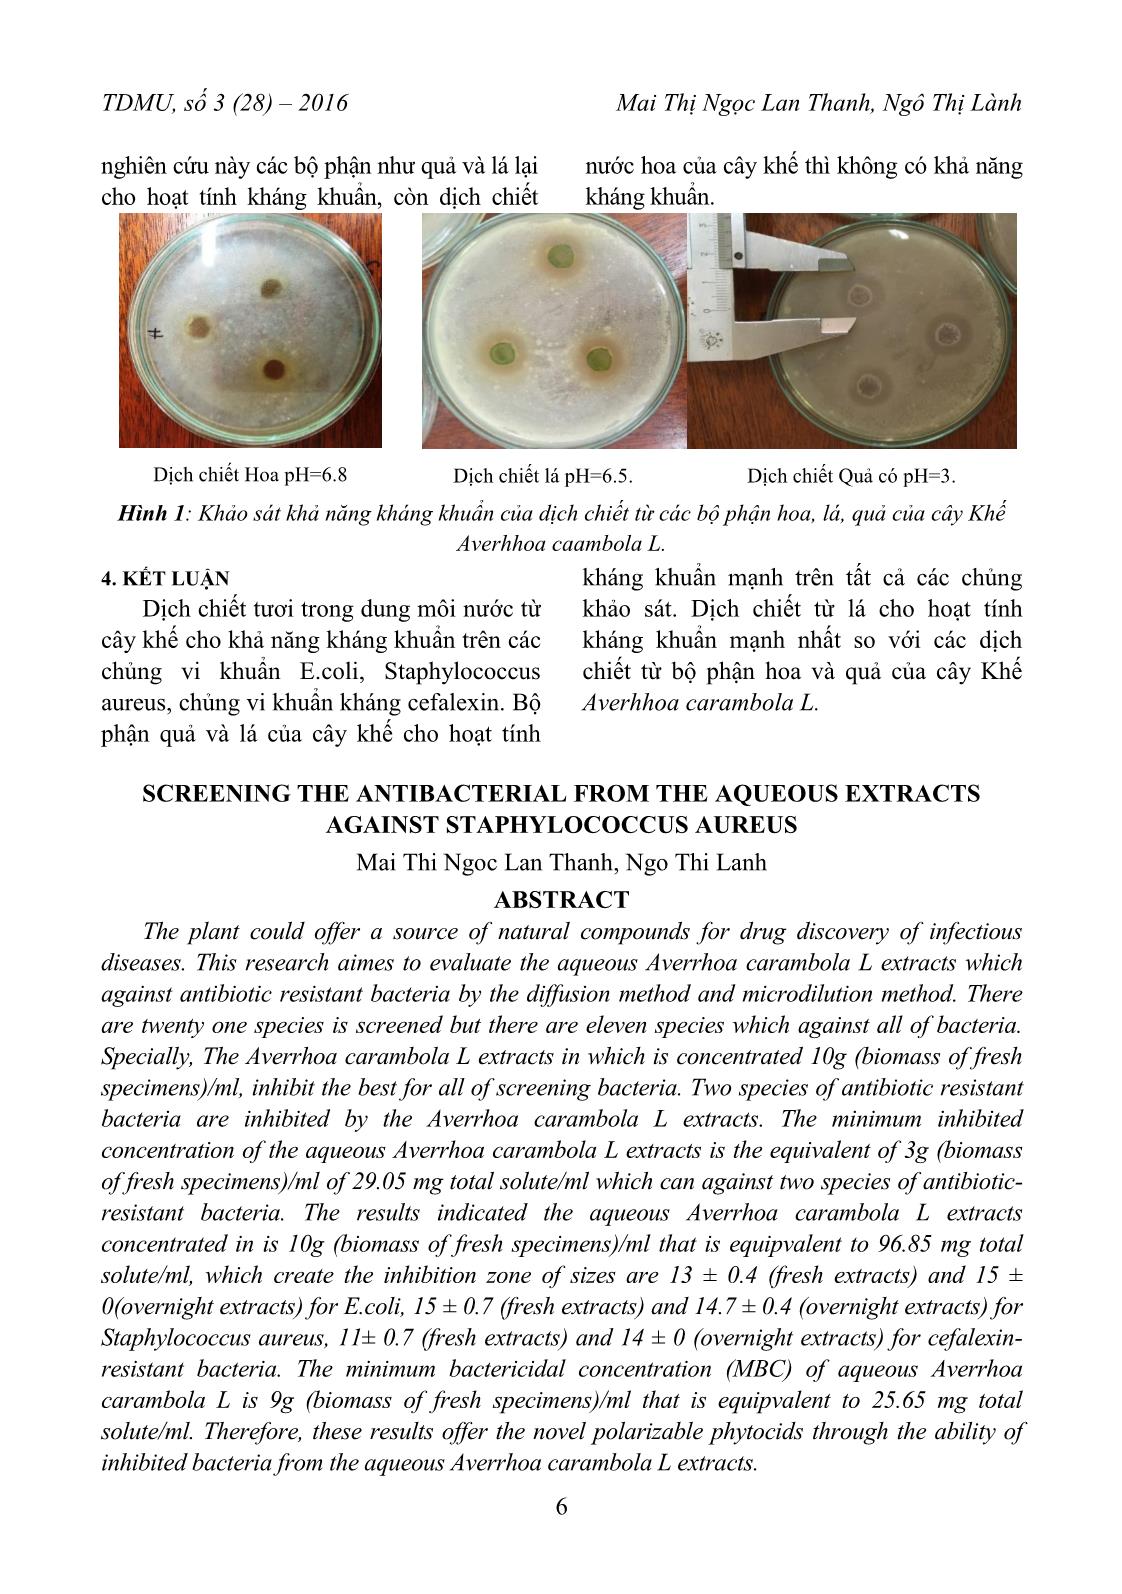 Sàng lọc kháng sinh thực vật tan trong dung môi nước kháng Staphylococcus Aureus trang 4